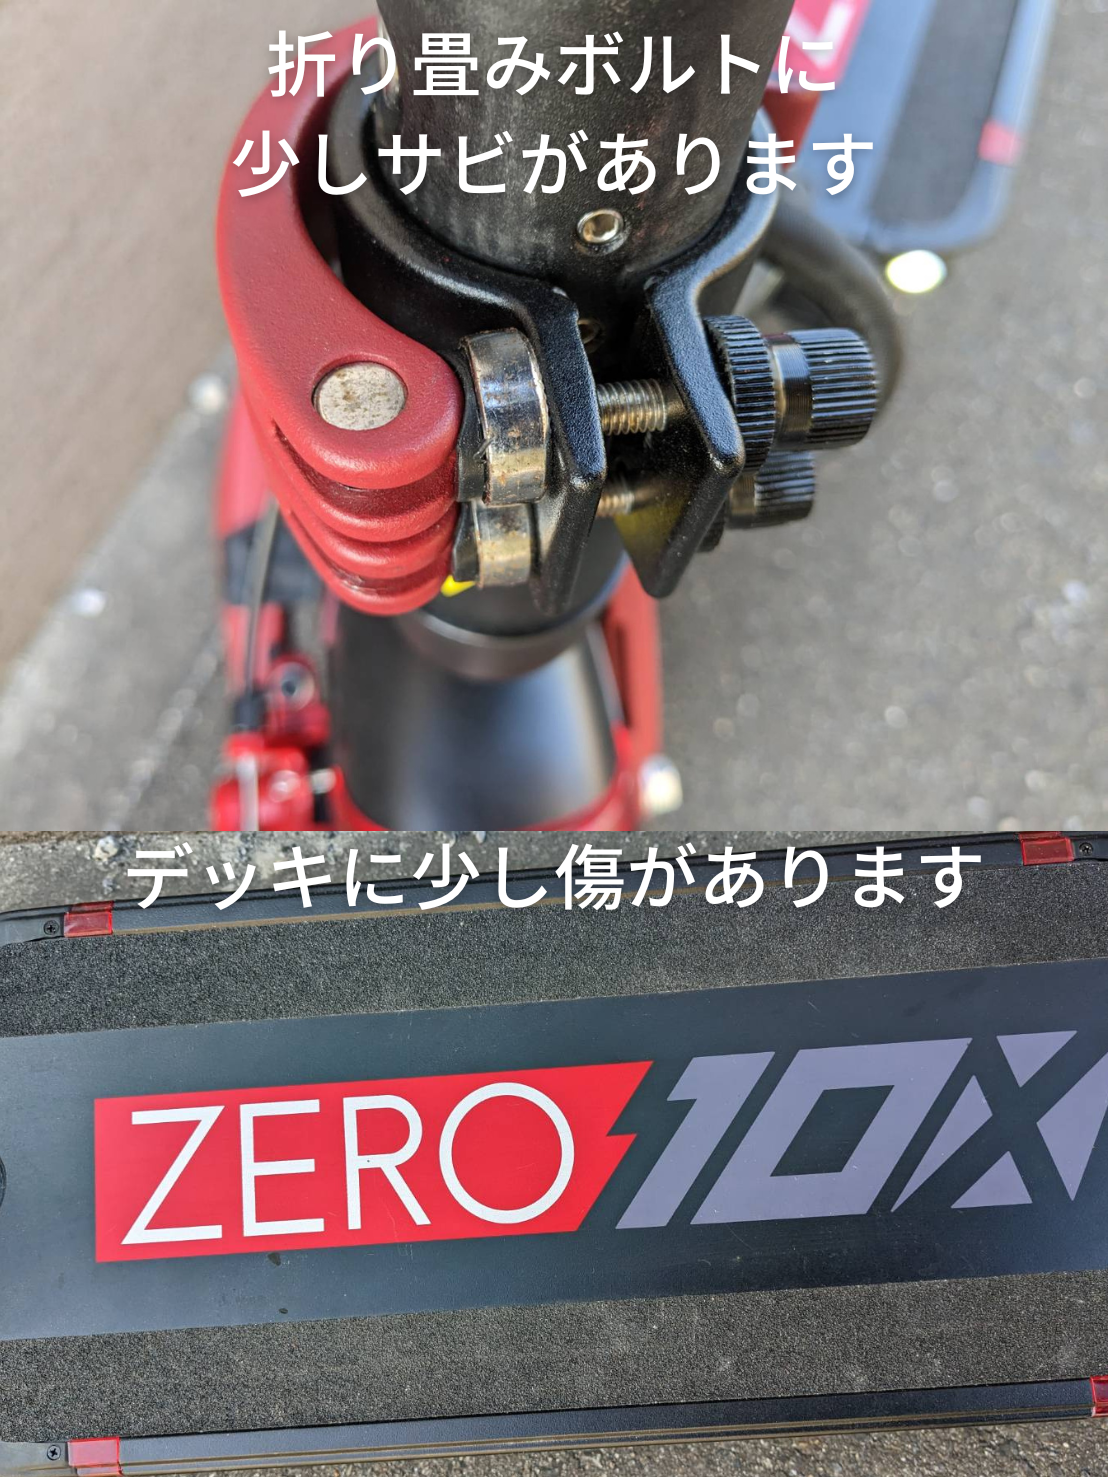 【ご成約済み】認定中古車ZERO10X (走行距離 12km)